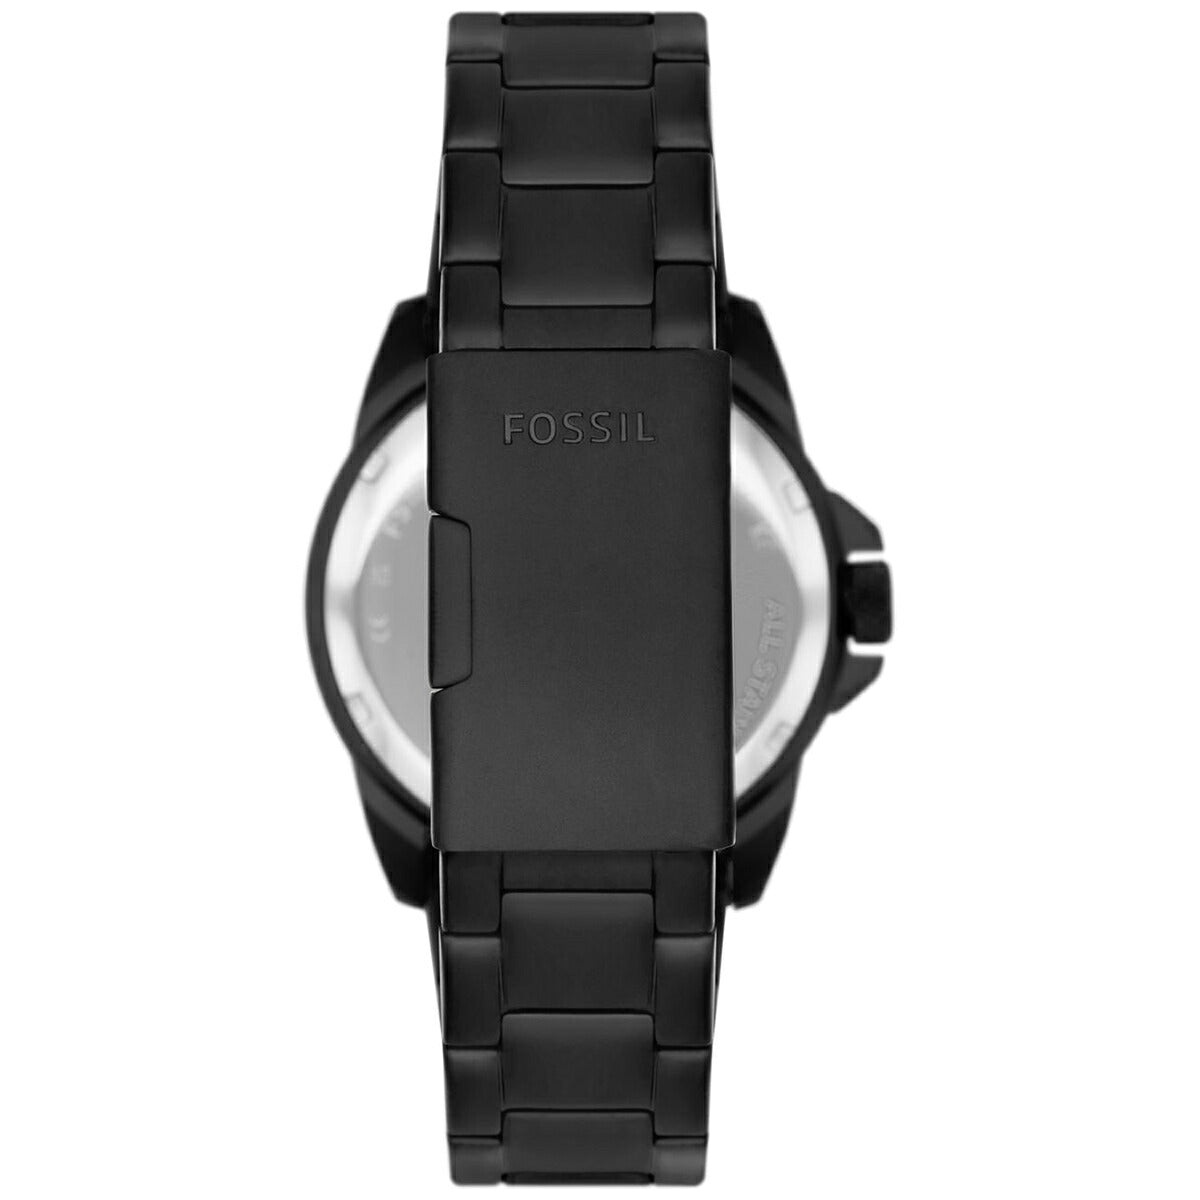 フォッシル FOSSIL 腕時計 メンズ BRONSON ブロンソン FS5940 三針デイト ブラック ステンレス